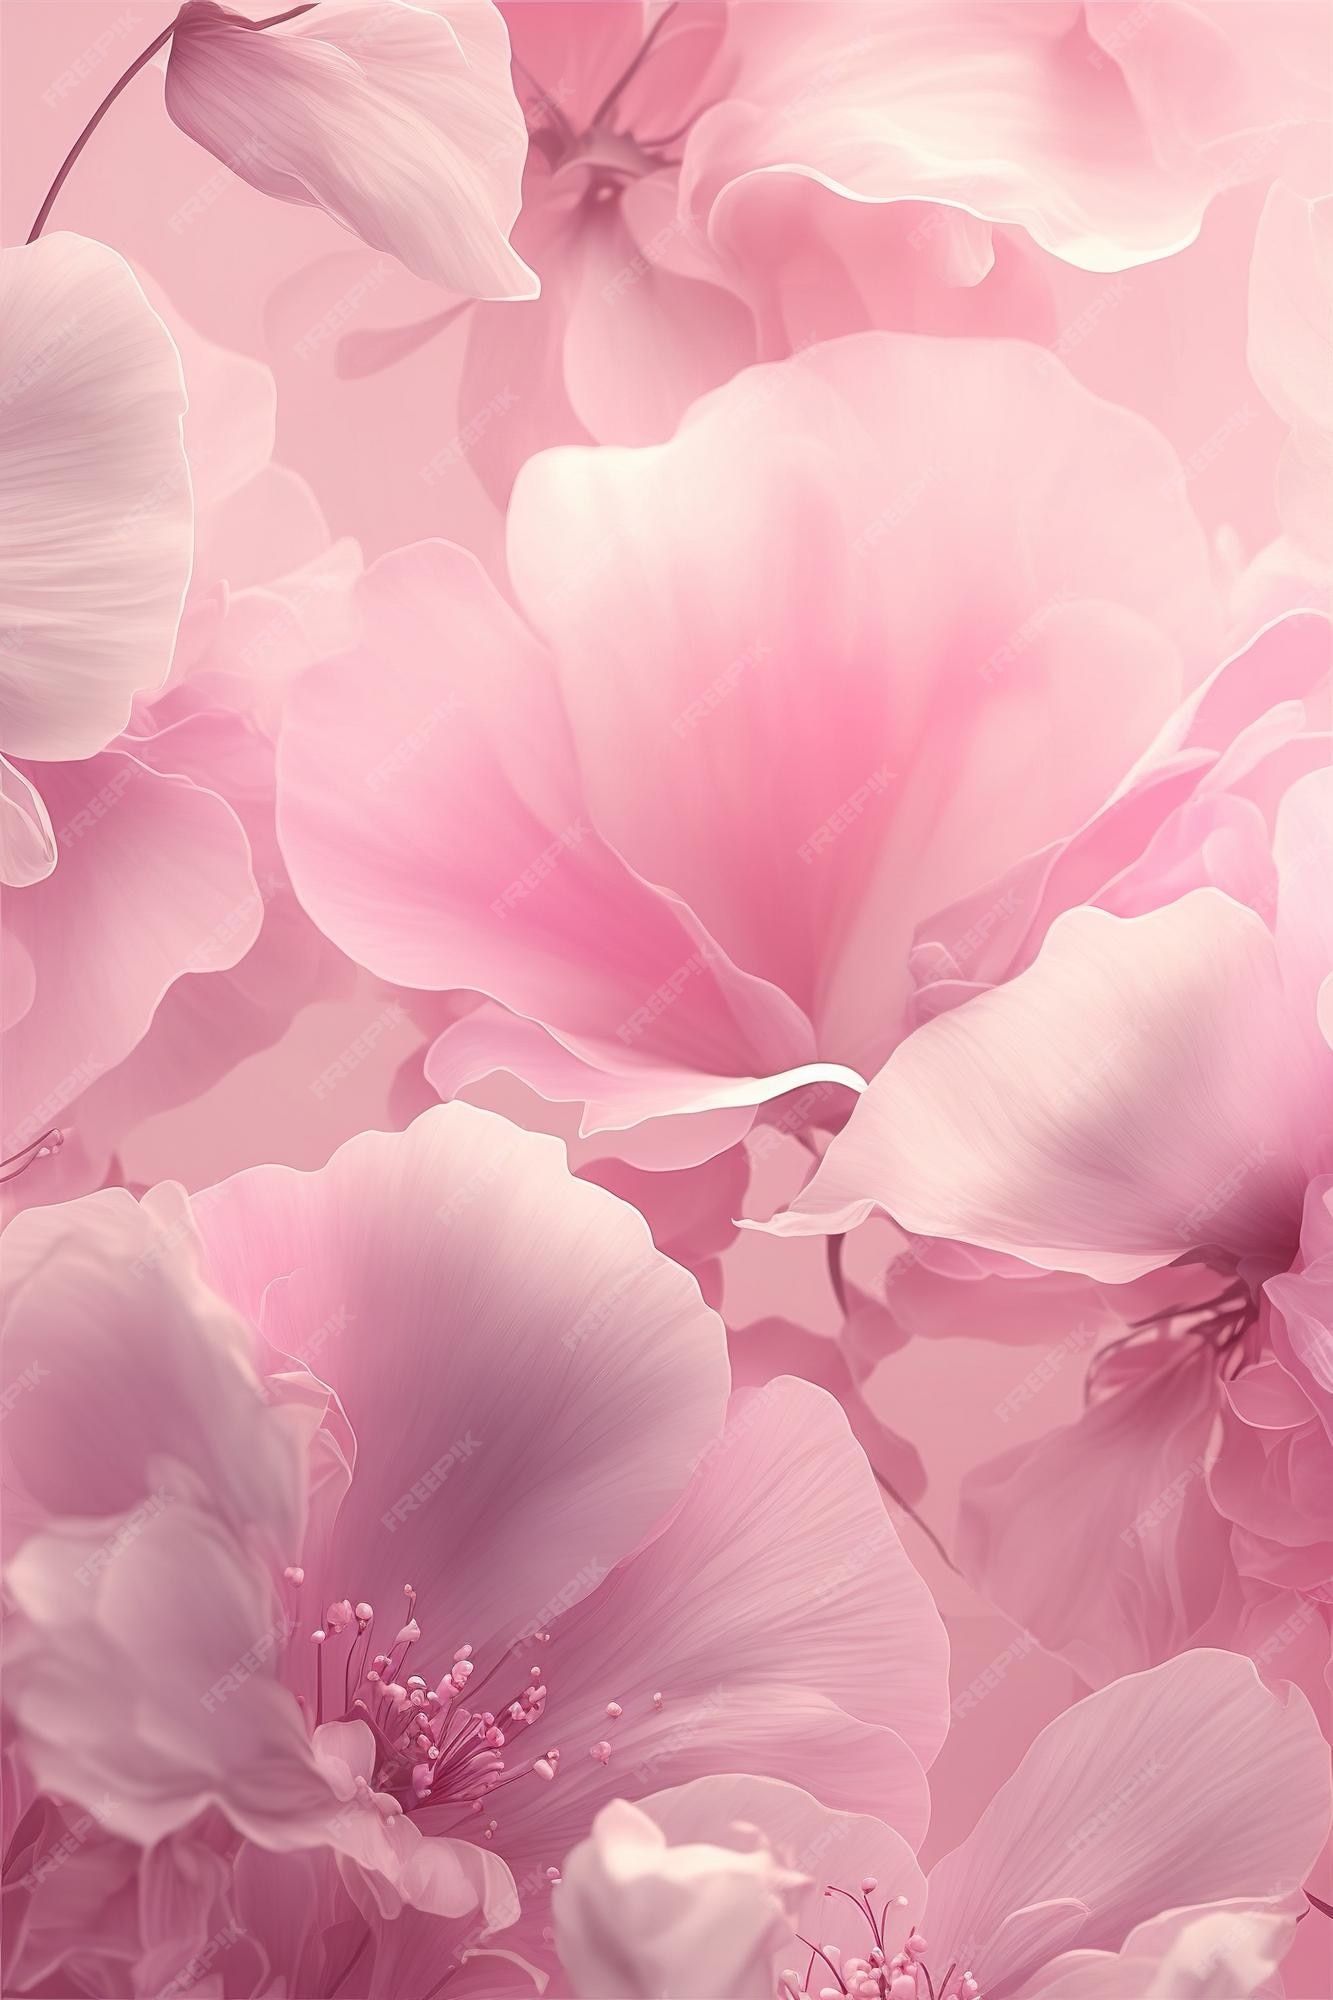  HD Blumen Hintergrundbild 1333x2000. Rosa Blumen Hintergrund Bilder Download auf Freepik